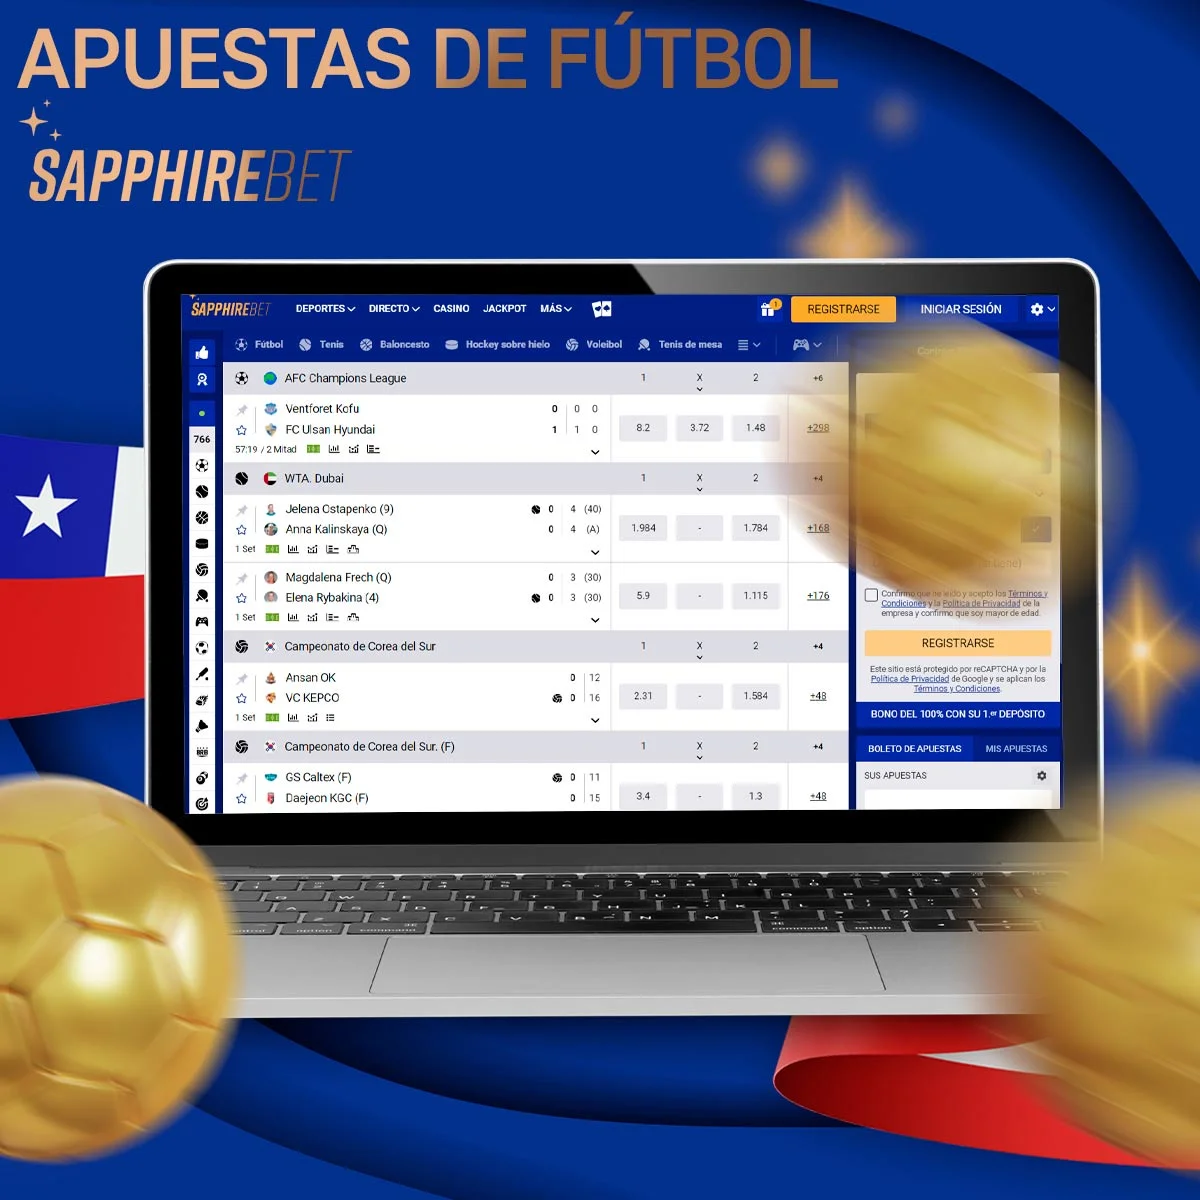 ¿Qué tipos de apuestas de fútbol hay disponibles en Sapphirebet Chile?